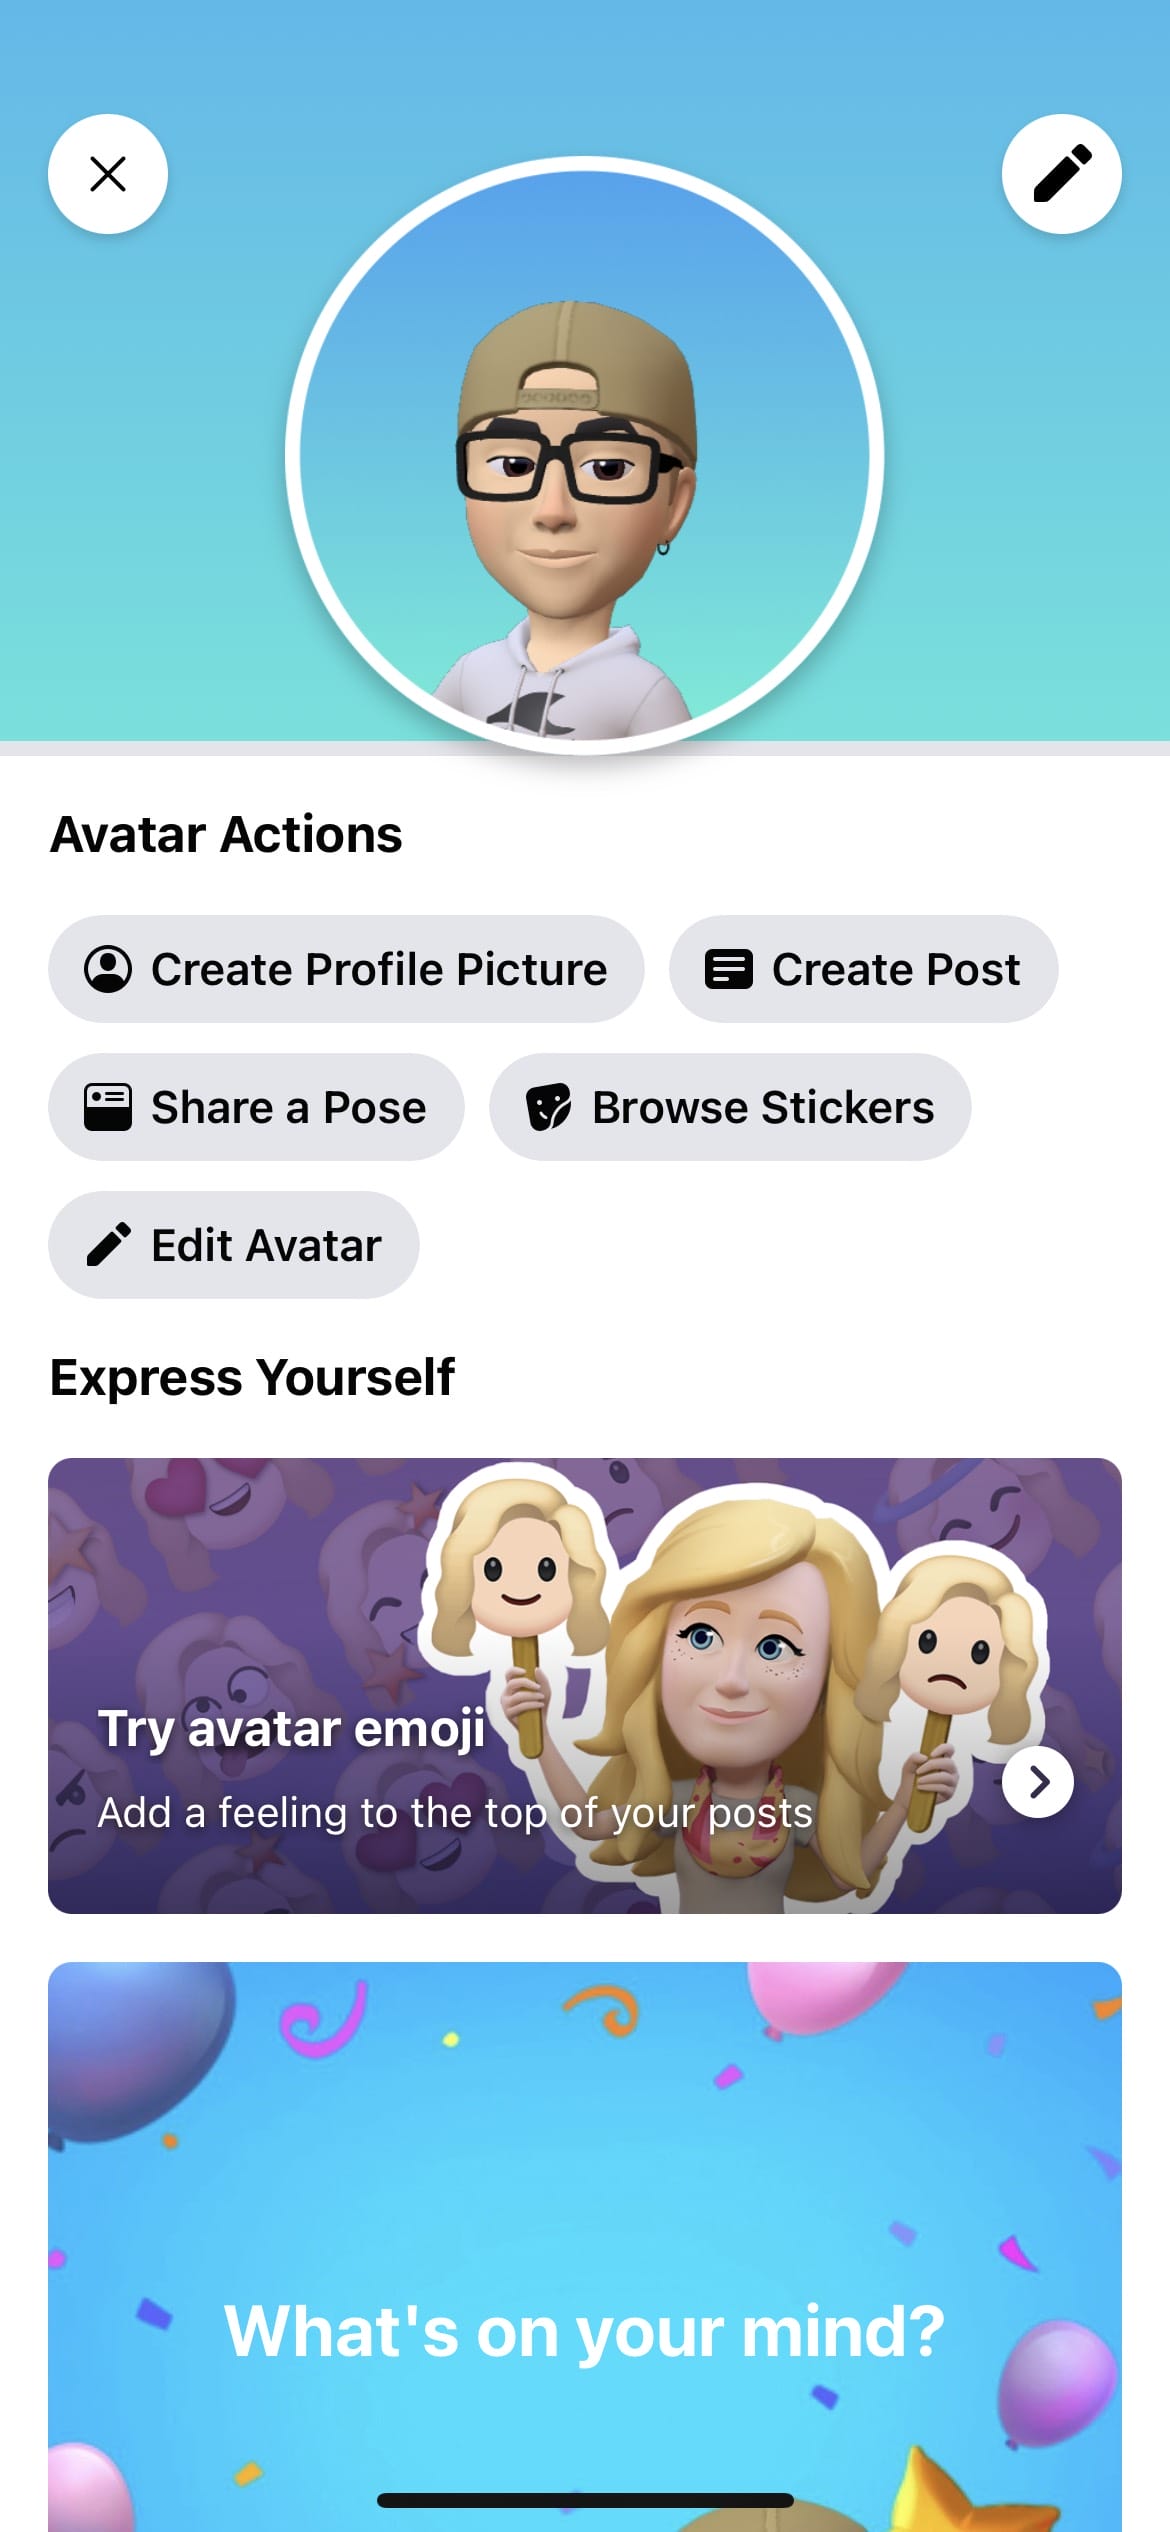 Hướng dẫn tạo bộ cảm xúc Emoji bằng FaceBook Avatar  Fptshopcomvn